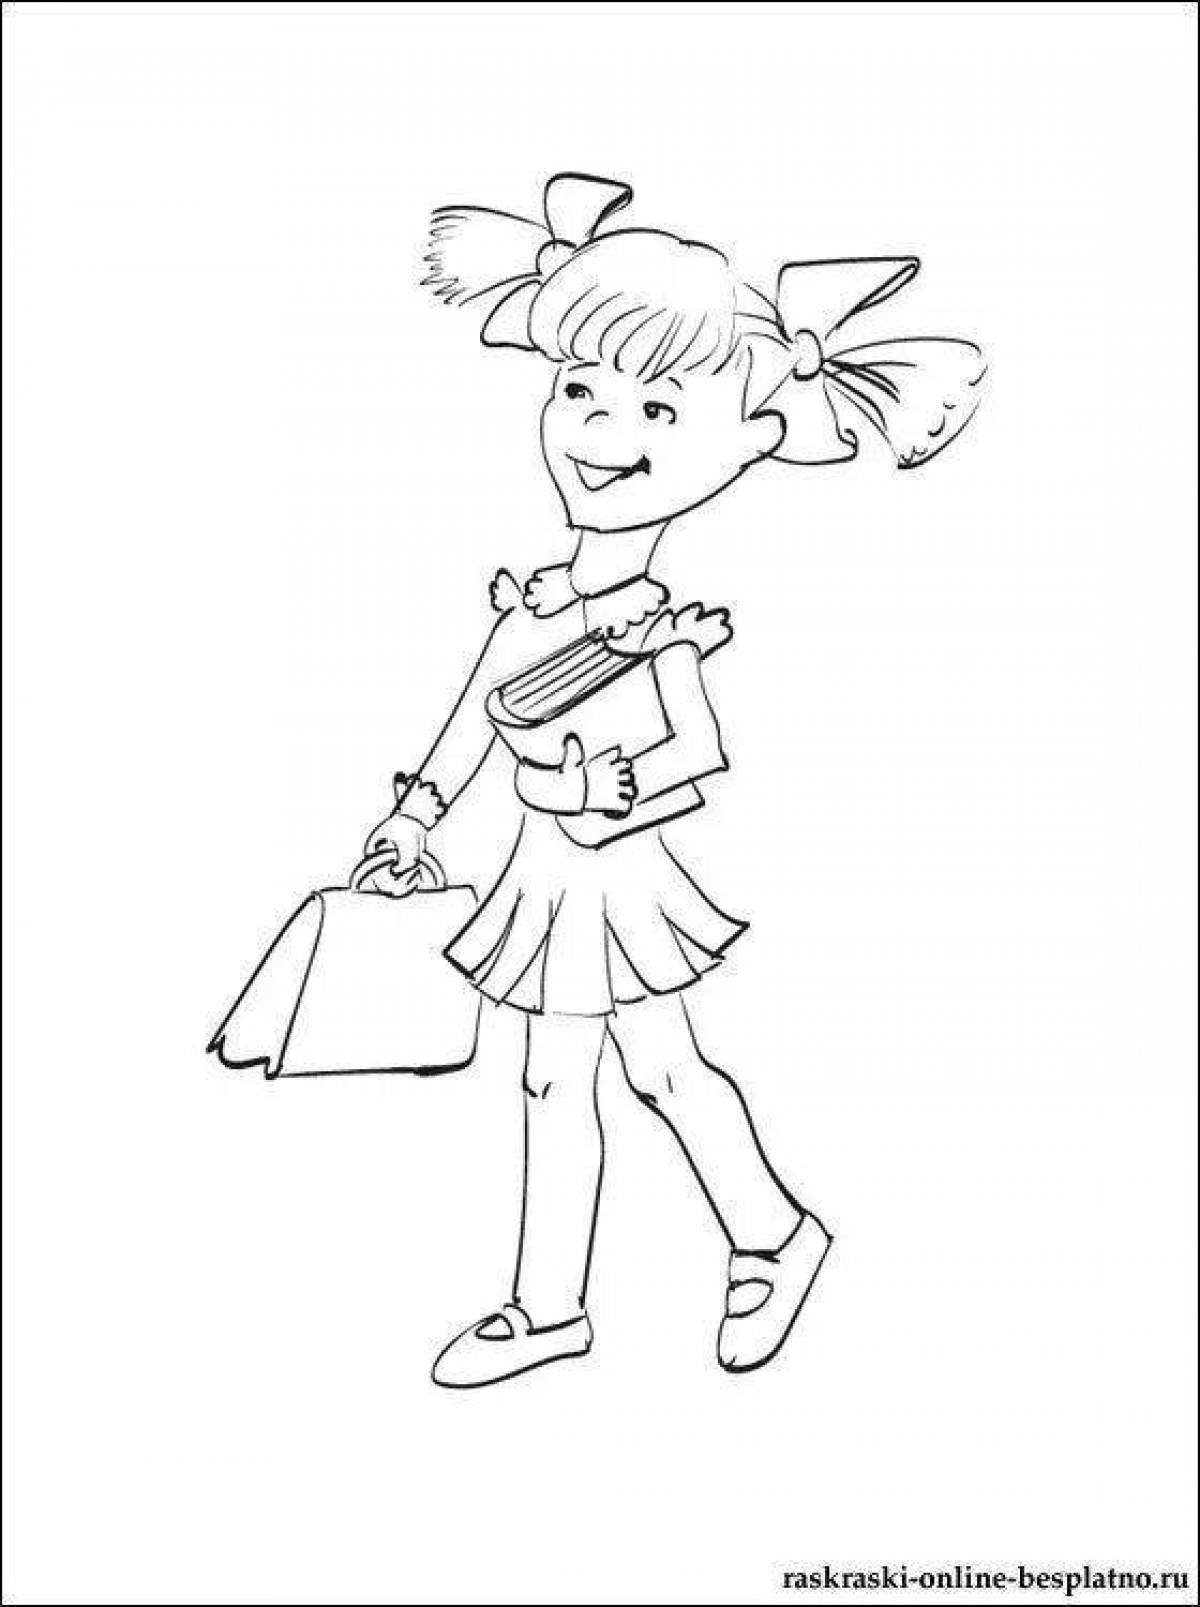 Coloring page energetic schoolgirl